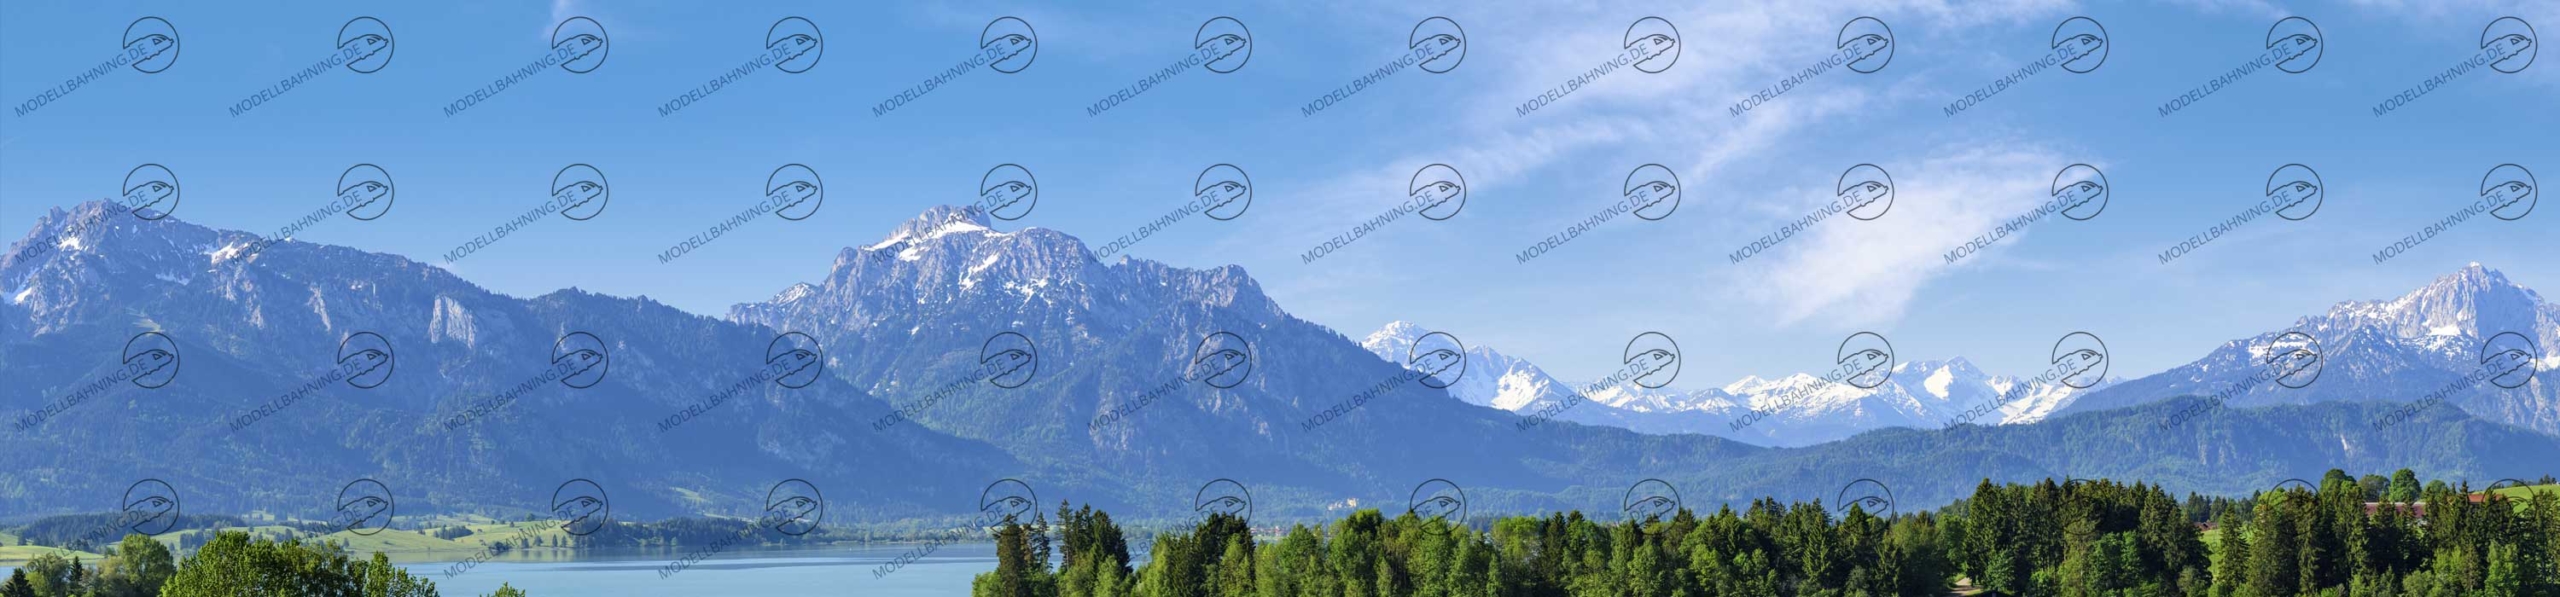 Teil 1 Modellbahnhintergrund Bayern mit Alpenbergen